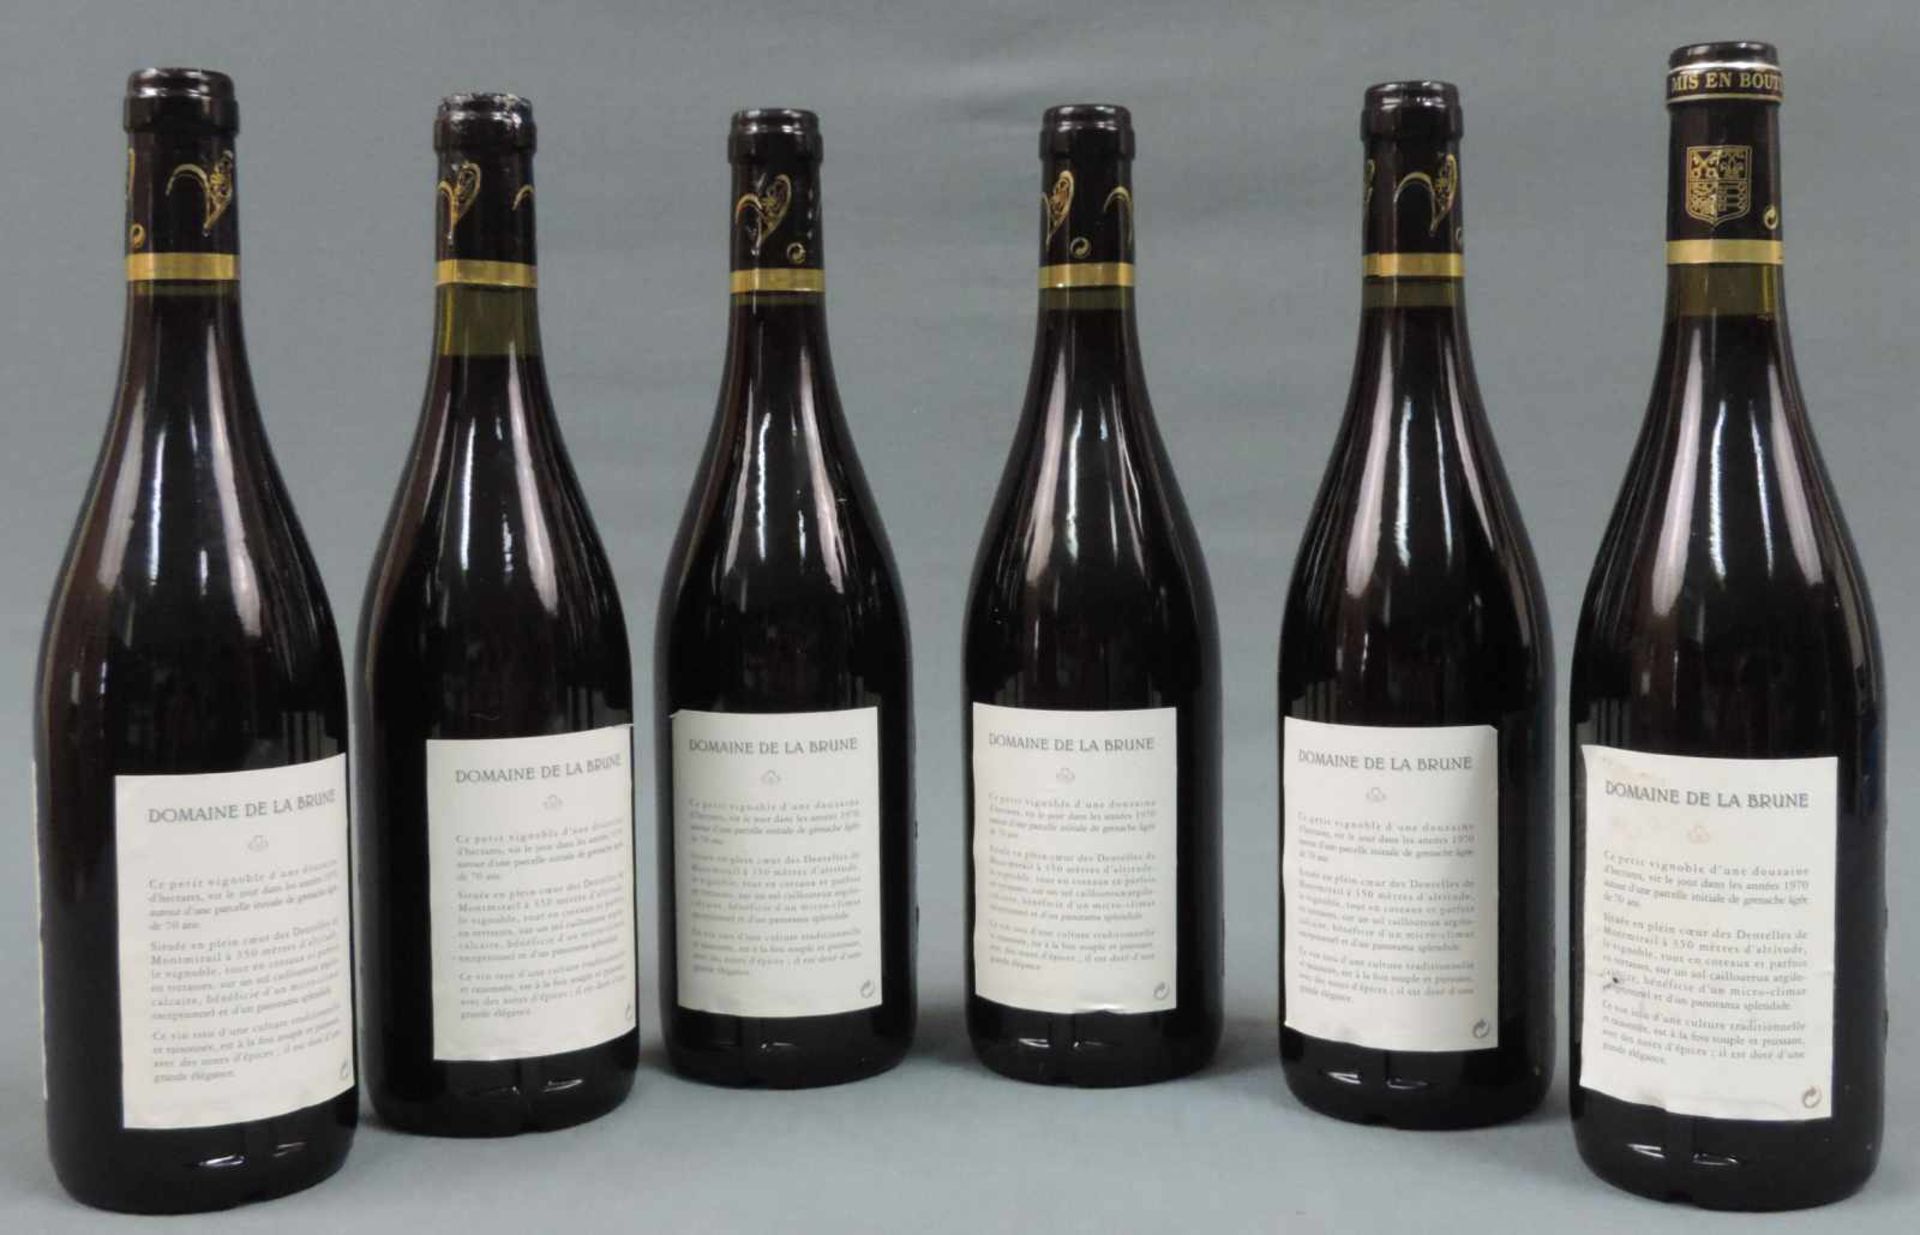 2001 und 2002 (5x) Domaine de la Brune, Beaumes de Venise. Insgesamt 6 ganze Flaschen 750 ml. - Bild 9 aus 10